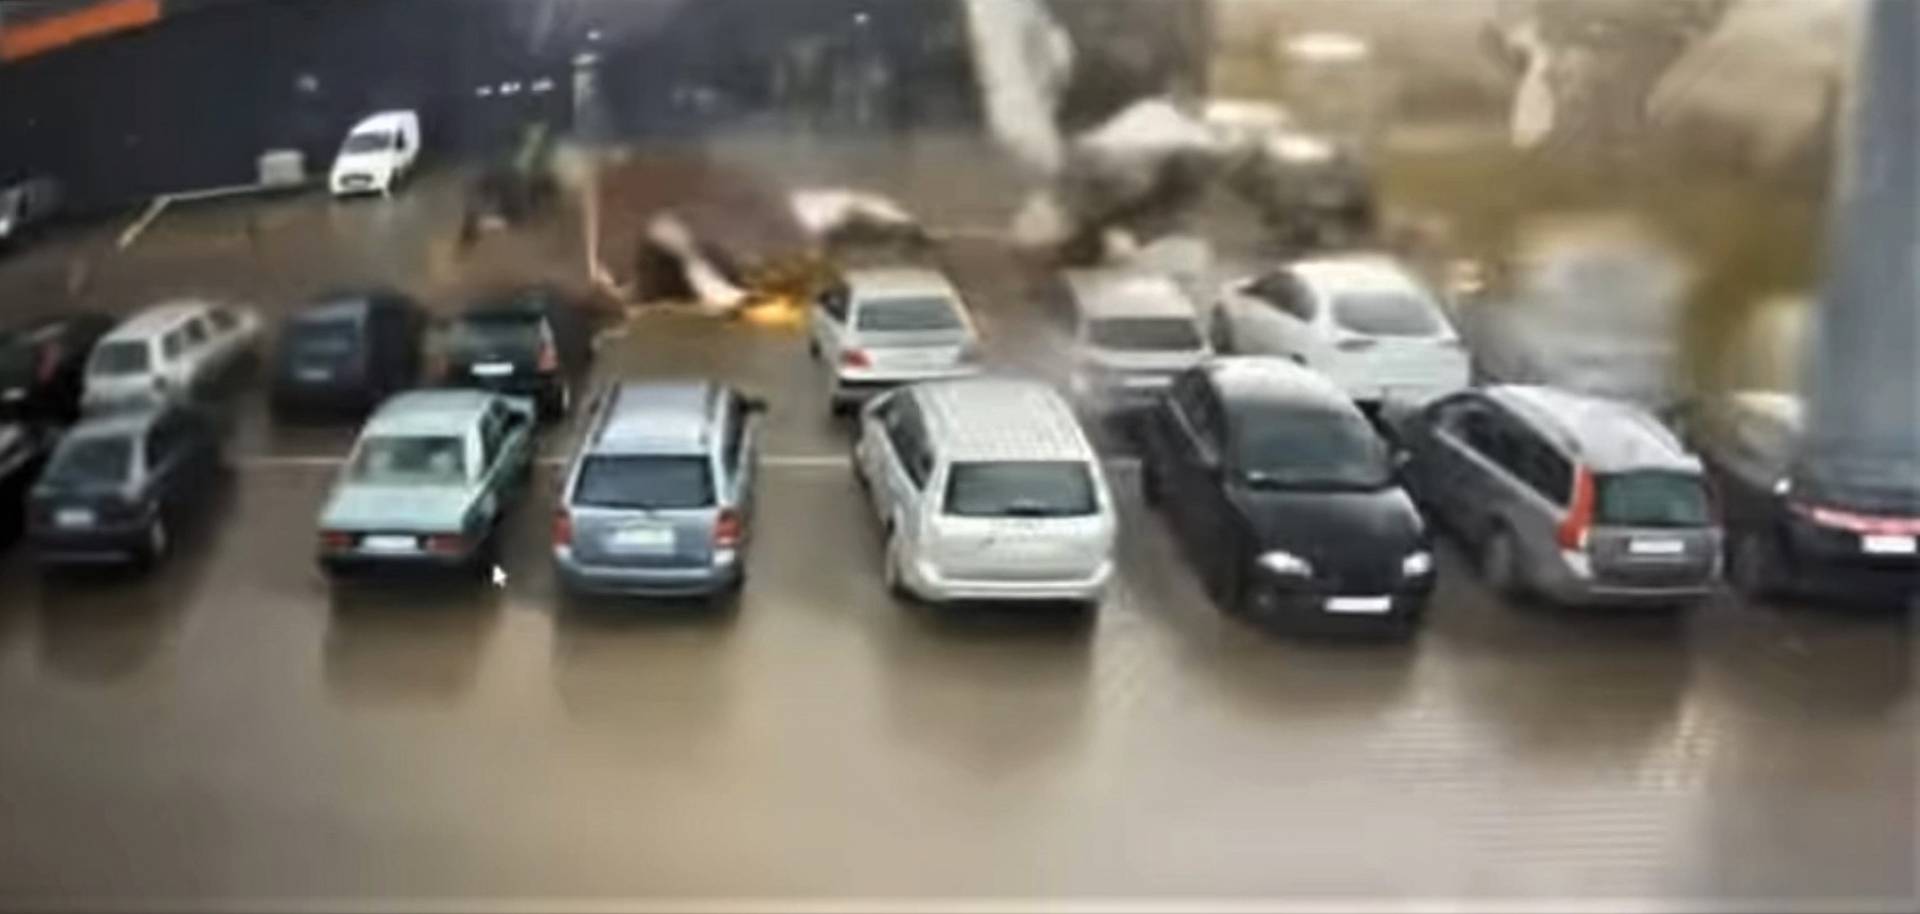 Wiatr zerwał dach ze sklepu Biedronka przy ulicy Półłanki: uszkodzone samochody